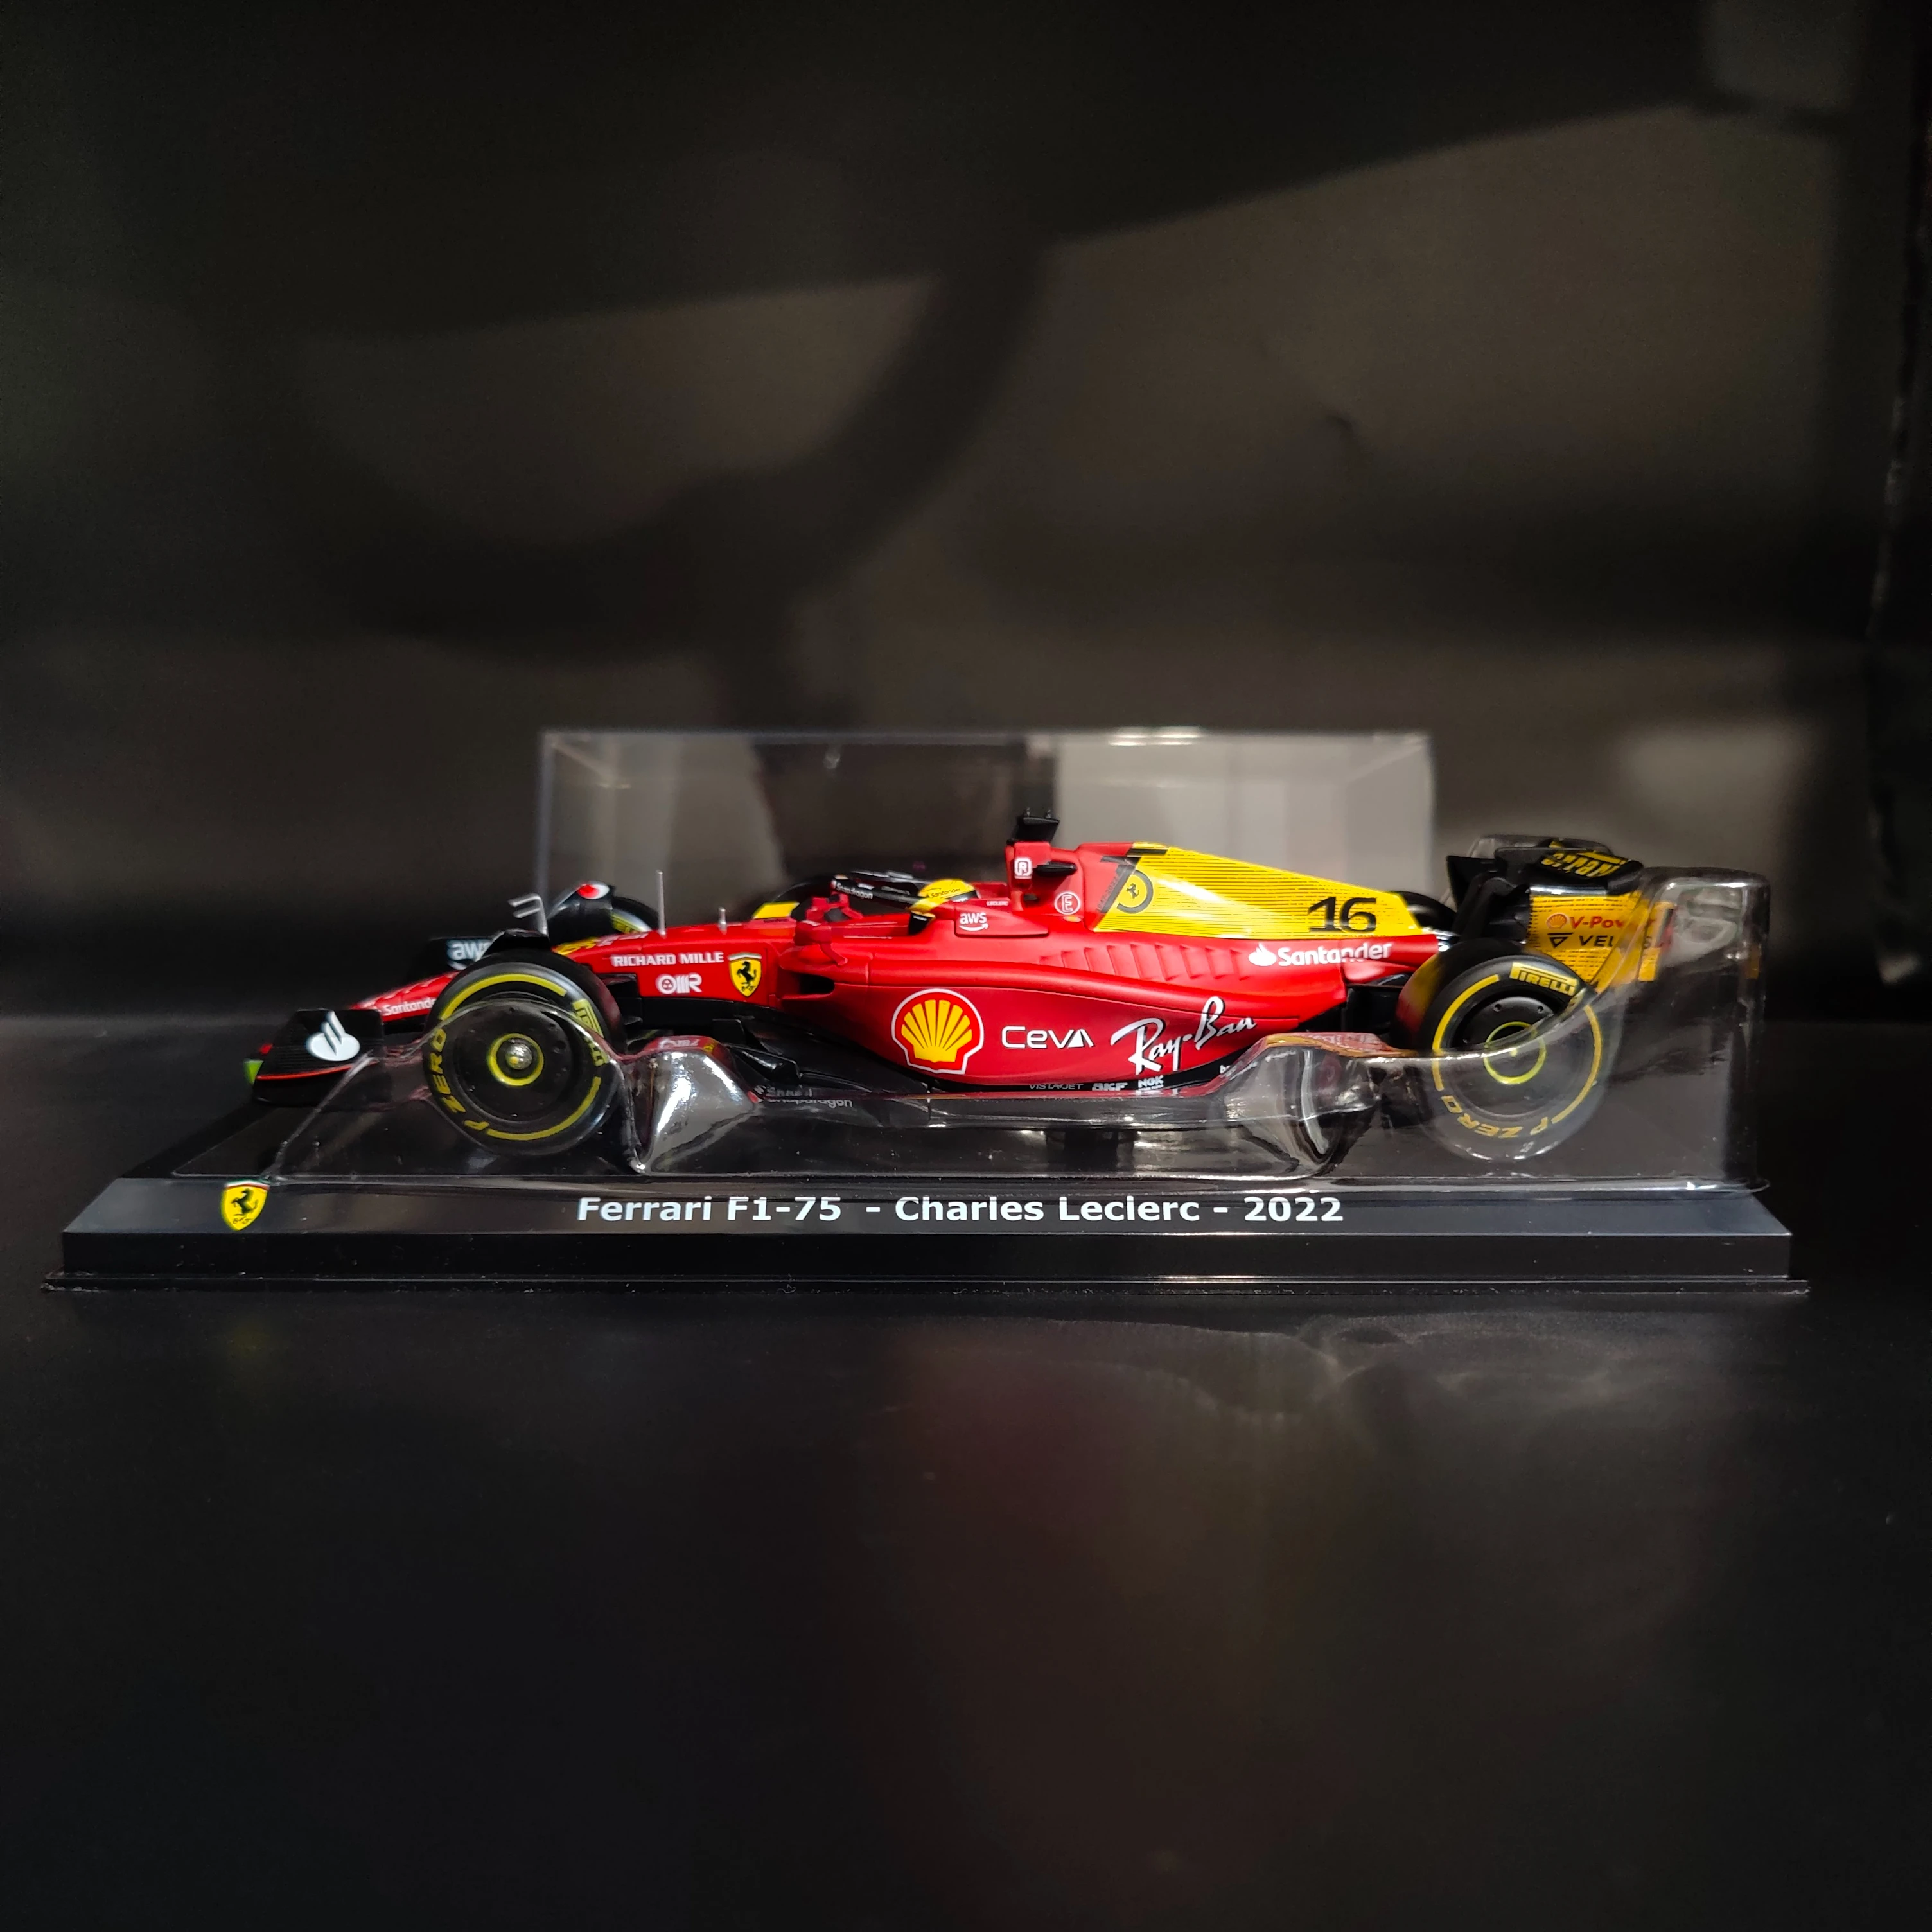 

Bburago 1:24 2022 75th Scuderia Ferrari F1-75 #16 Replica Limited Edition Car Model with Showcase Scale Formula 1 Miniature Toy